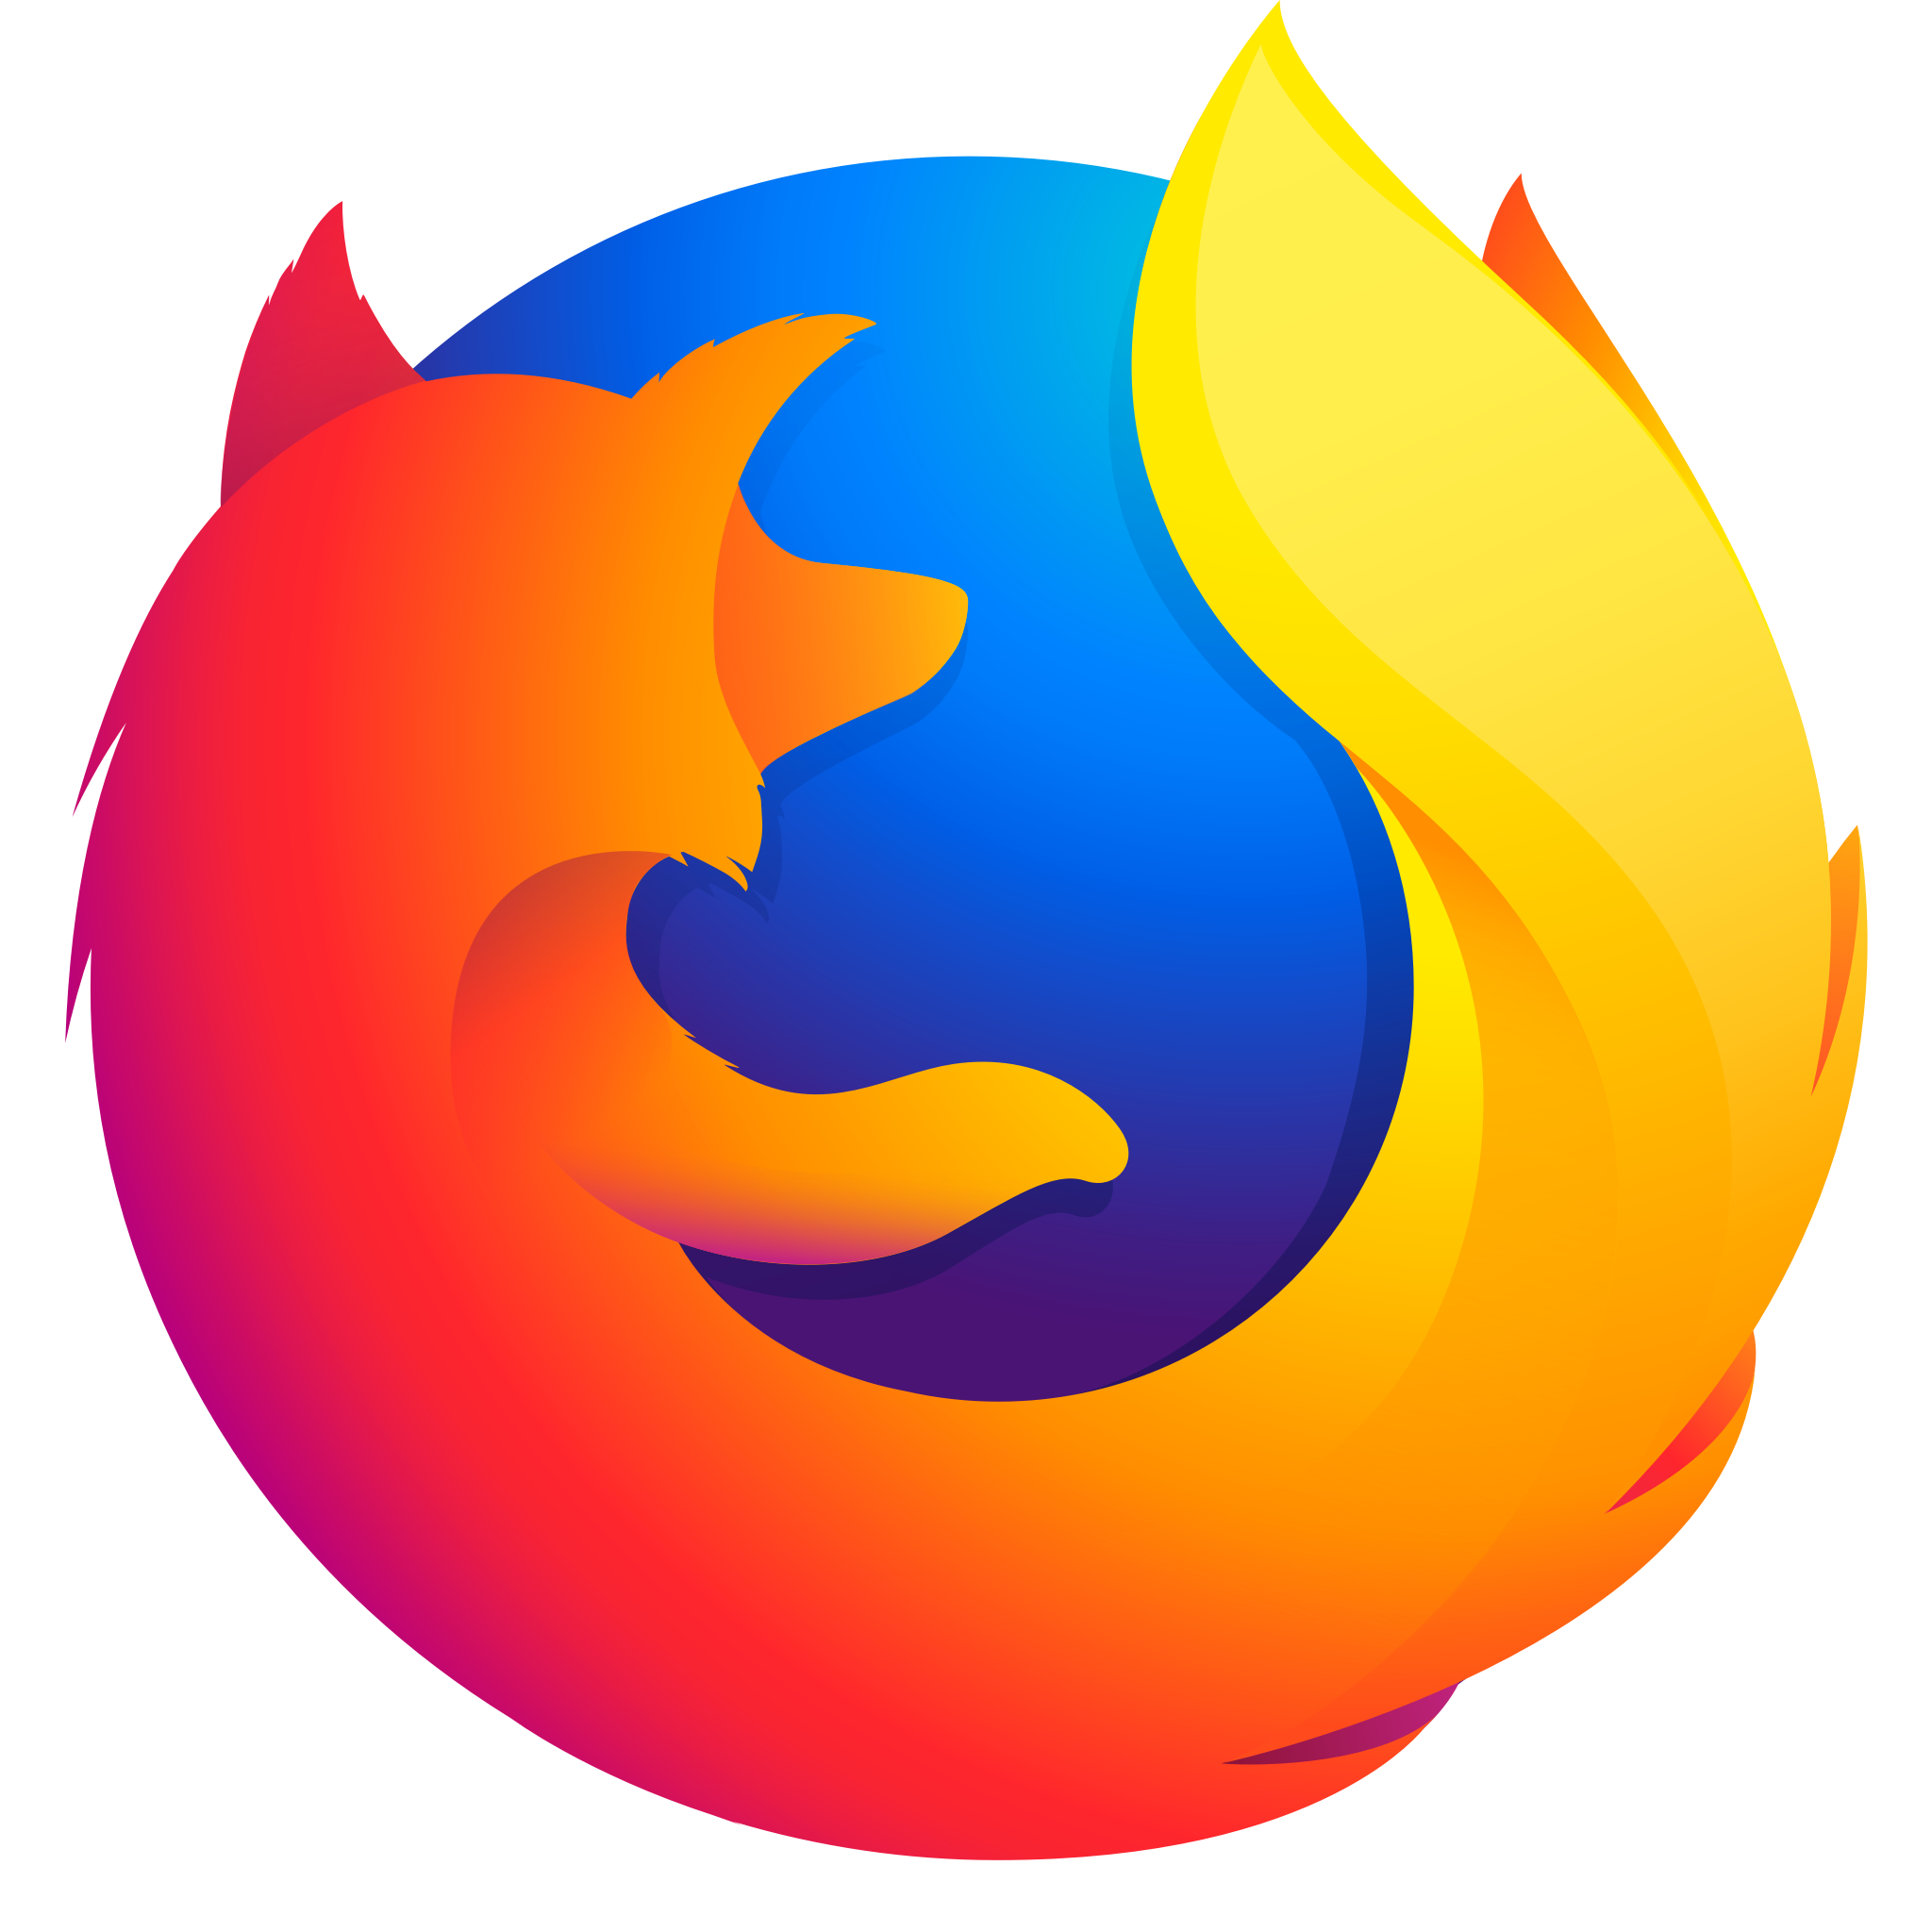 Firefox 122